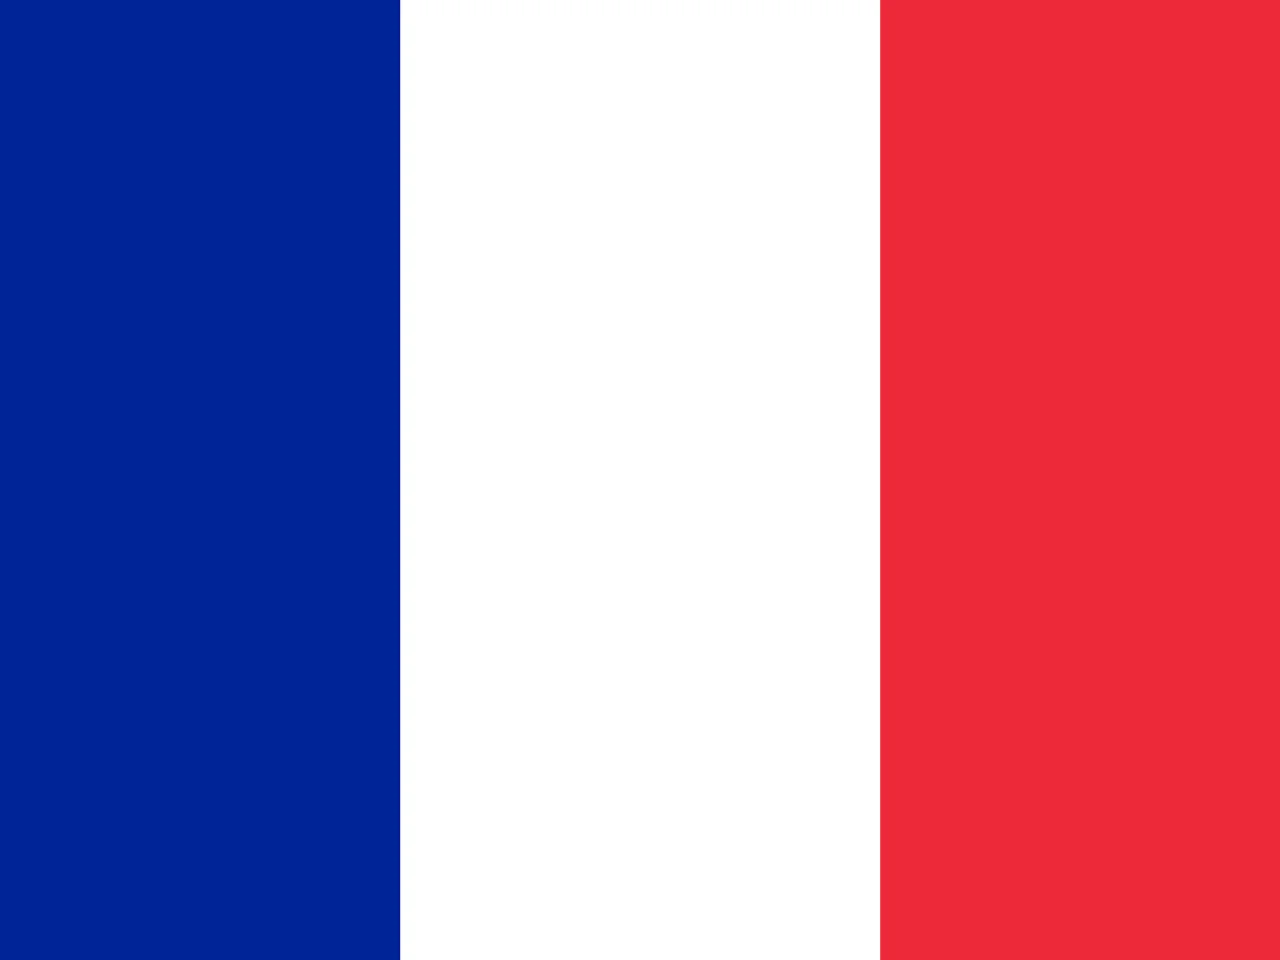 Emmanuel Macron wygrywa wybory prezydenckie we Francji!